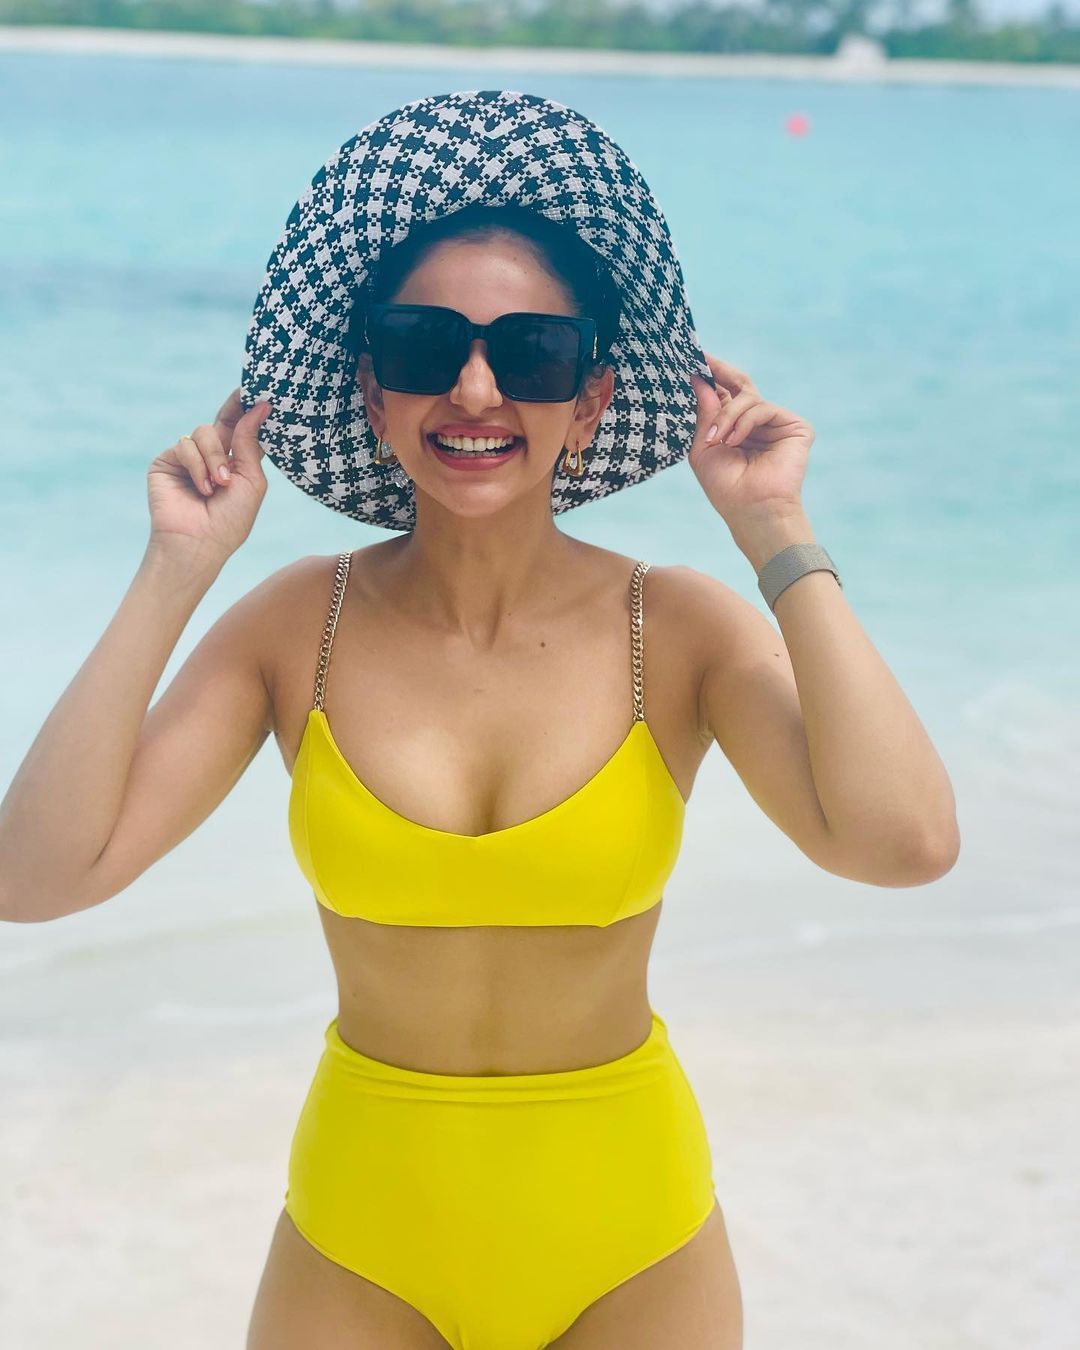 rakul-preeth-singh-stunning-looks-in-bikini-at-maldives